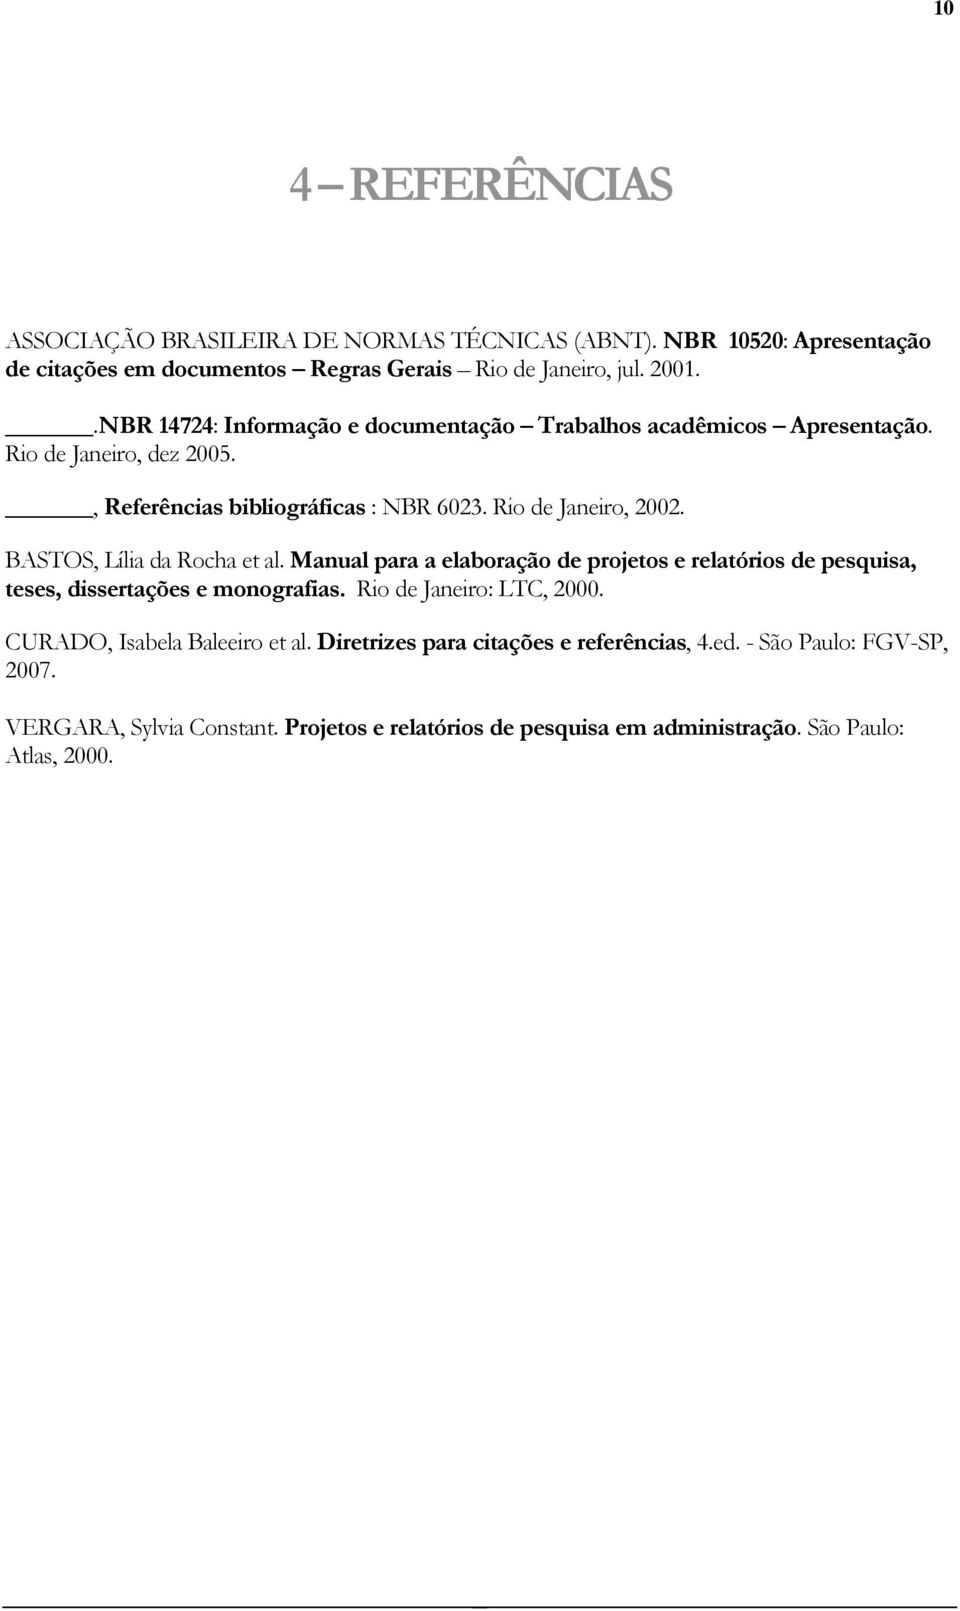 BASTOS, Lília da Rocha et al. Manual para a elaboração de projetos e relatórios de pesquisa, teses, dissertações e monografias. Rio de Janeiro: LTC, 2000.